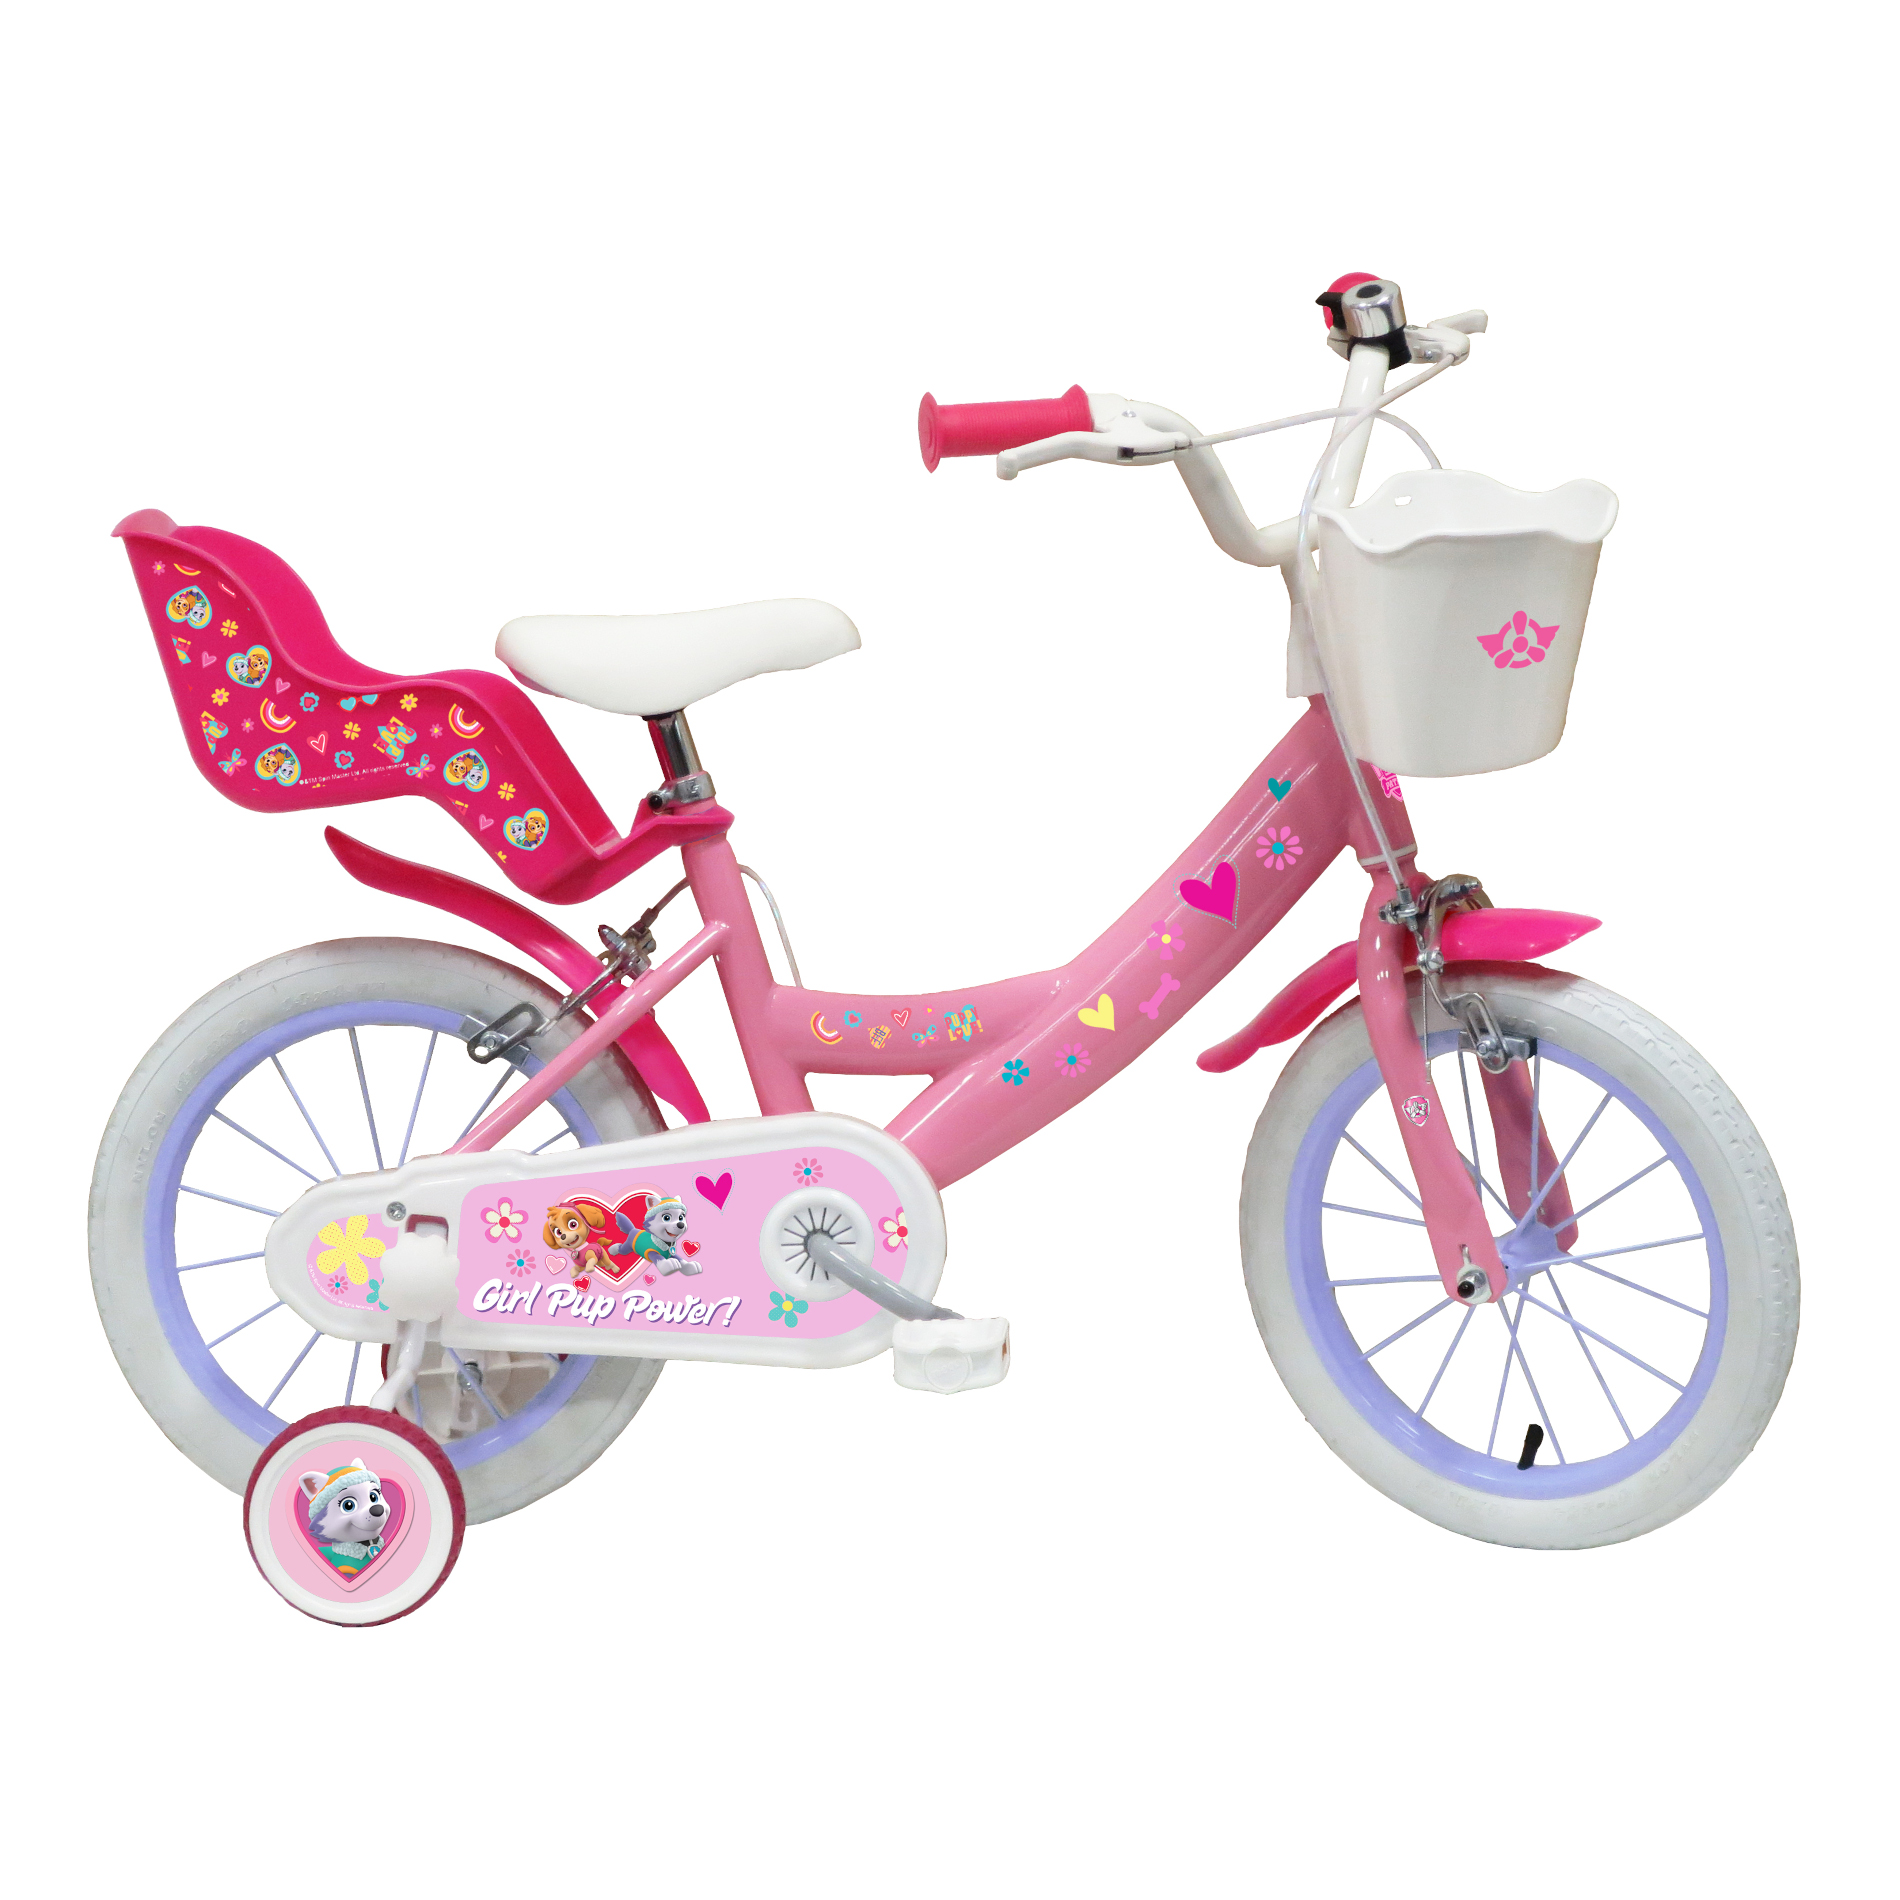 Bicicleta Niña 14 Pulgadas Patrulla Canina 4-6 Años - rosa - 